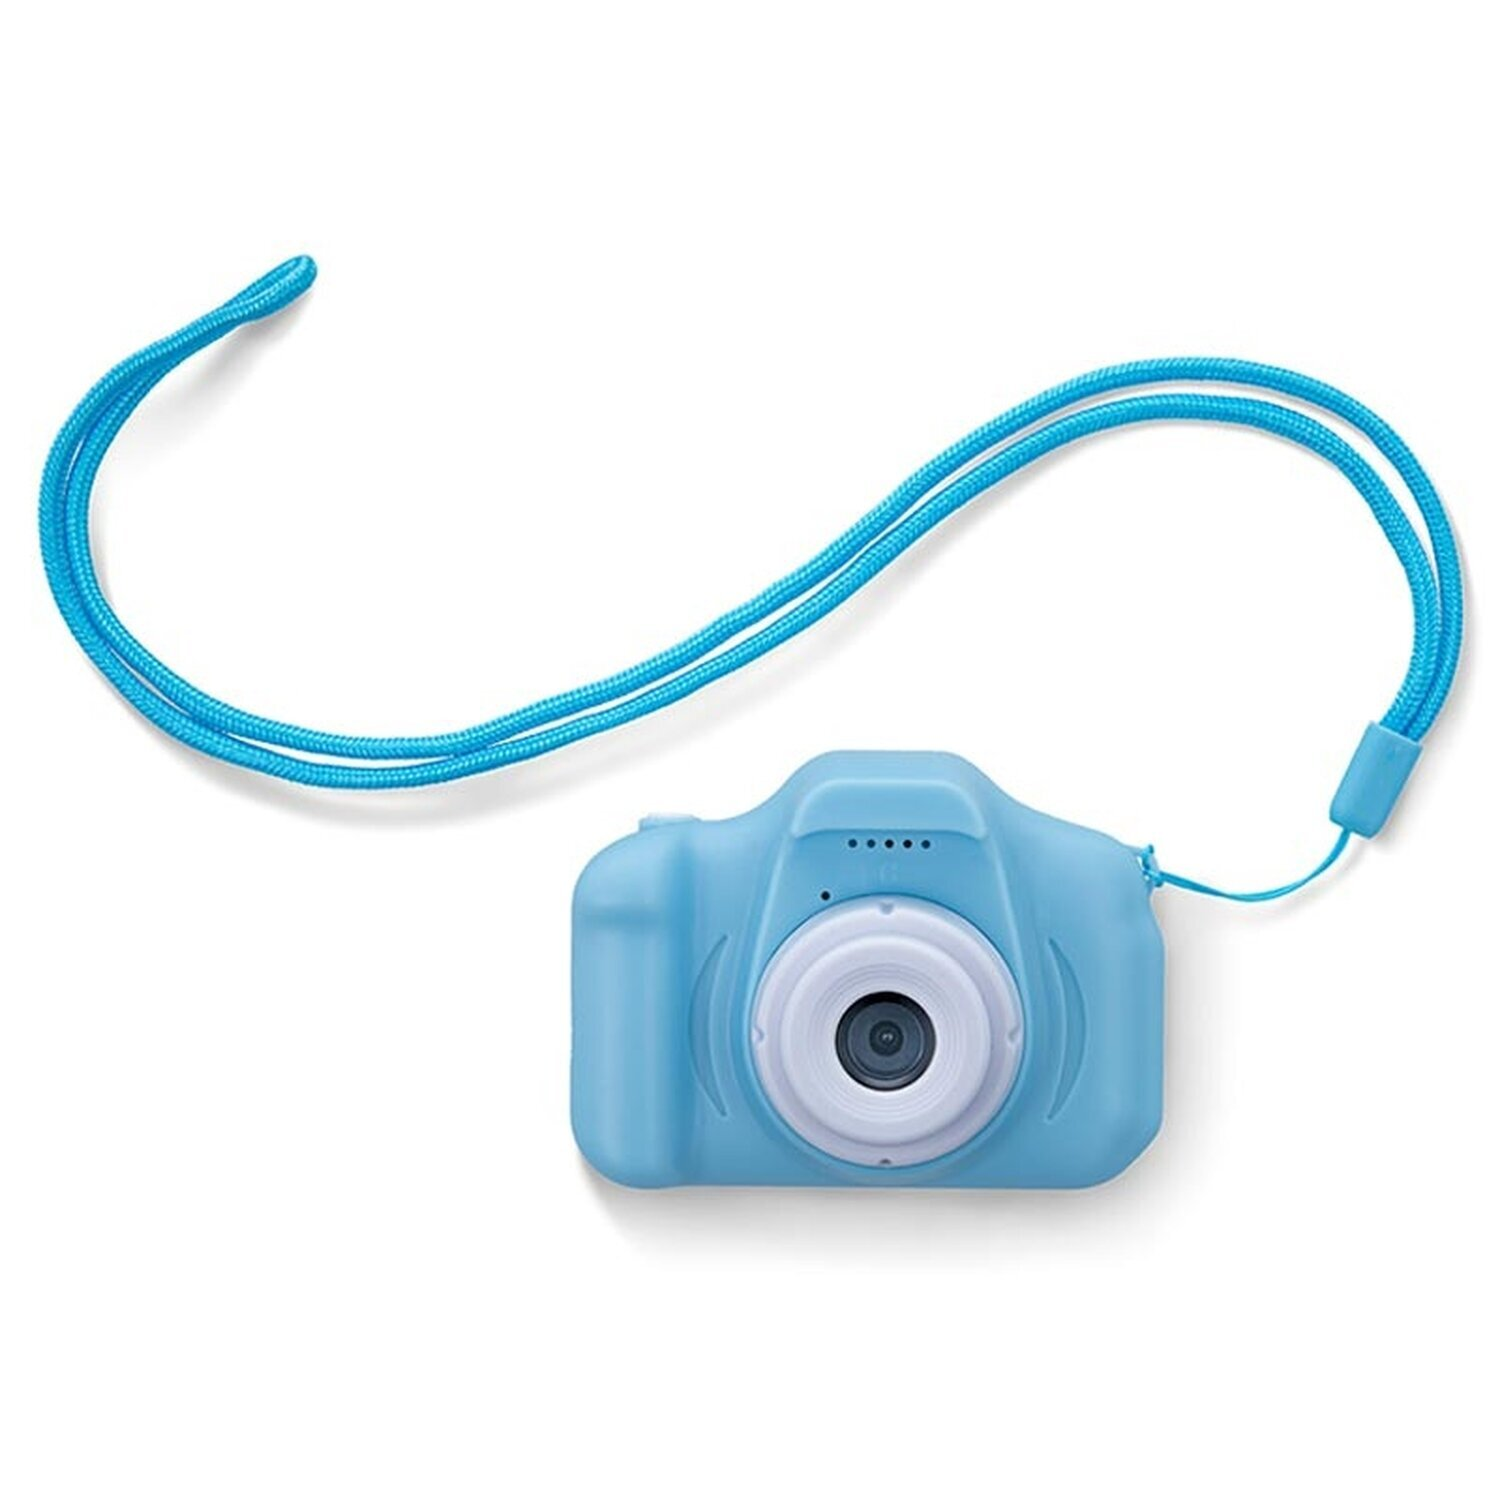 Blau SKC-100 Digitalkamera FOREVER